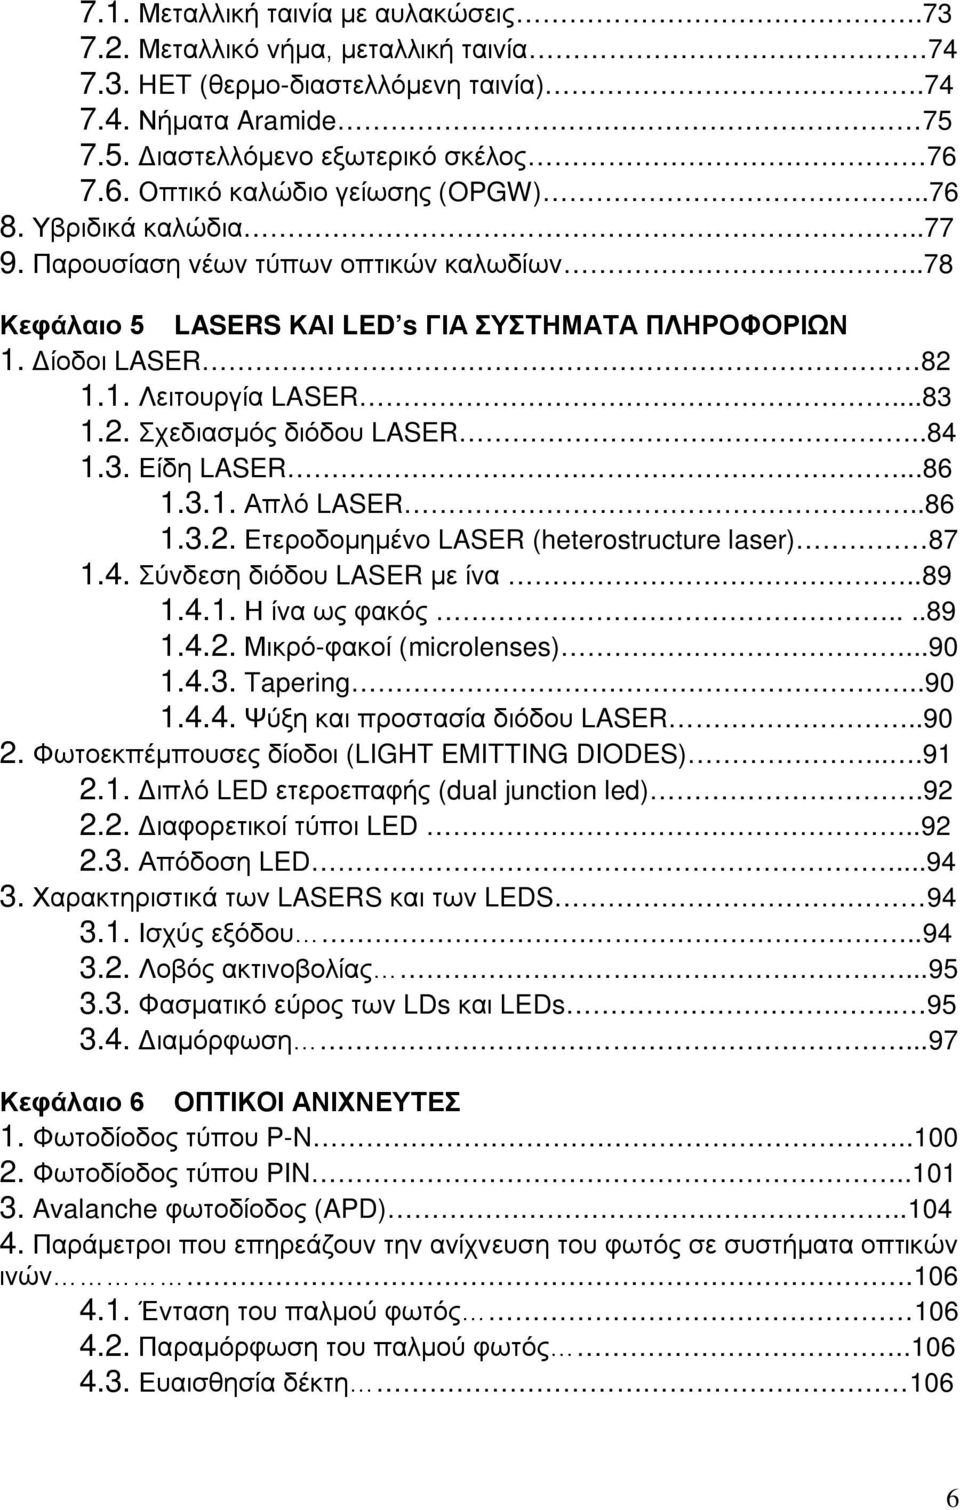 ..83 1.2. Σχεδιασμός διόδου LASER..84 1.3. Είδη LASER...86 1.3.1. Απλό LASER..86 1.3.2. Ετεροδομημένο LASER (heterostructure laser) 87 1.4. Σύνδεση διόδου LASER με ίνα..89 1.4.1. Η ίνα ως φακός....89 1.4.2. Μικρό-φακοί (microlenses).